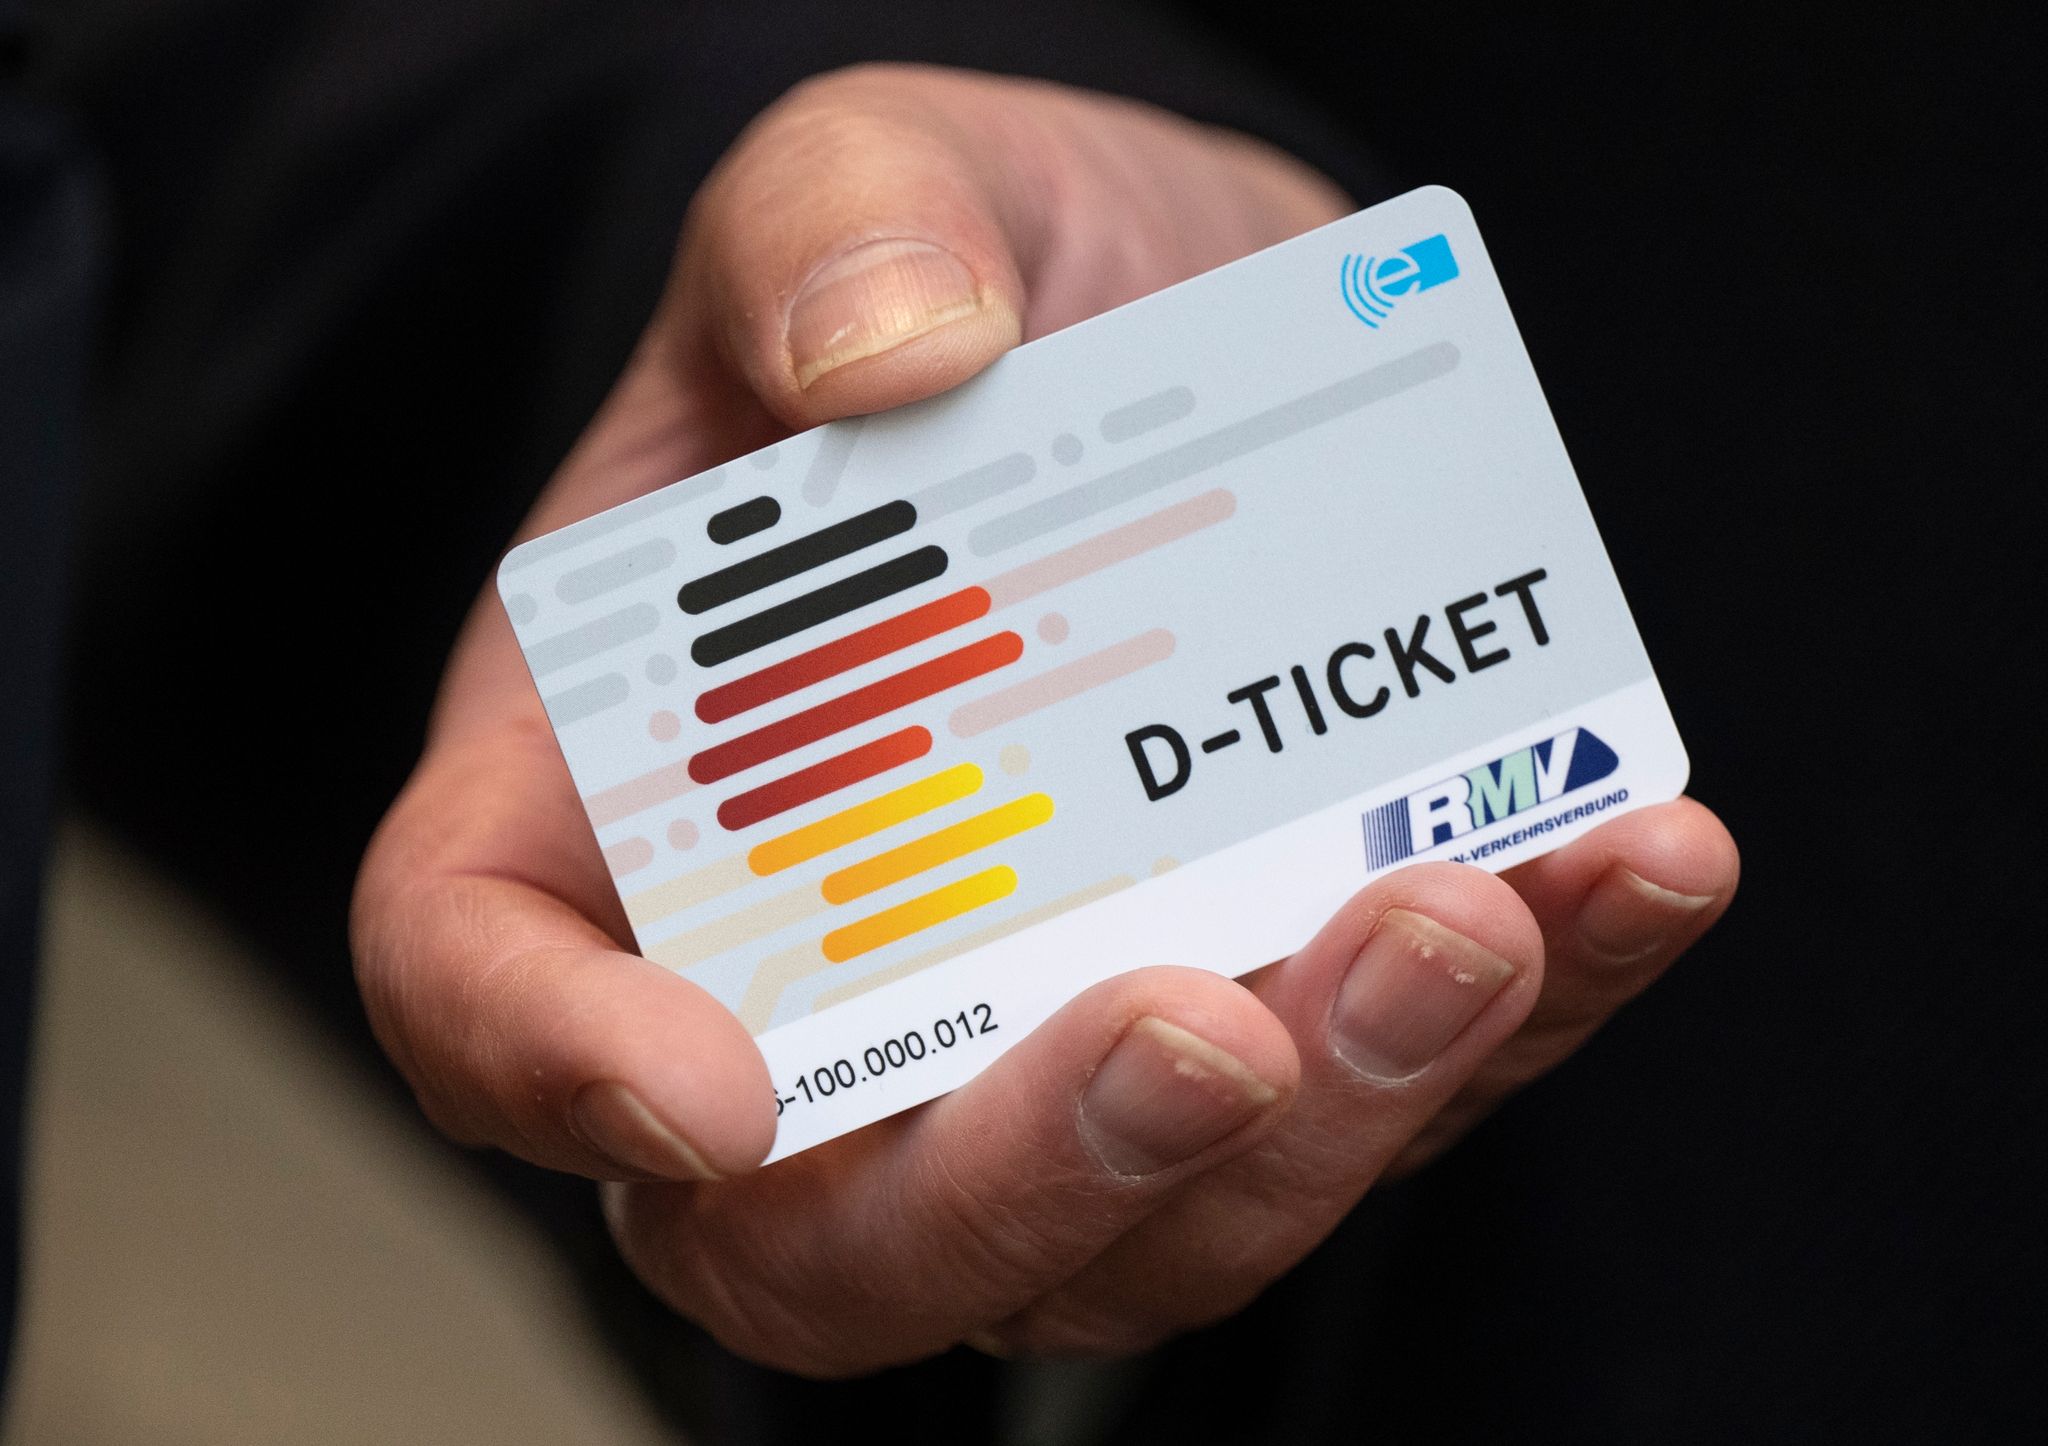 Oberstes Ziel der Verkehrsbranche bleibe es, so viele Menschen wie möglich von dem Ticket zu überzeugen, teilte der Verband Deutscher Verkehrsunternehmen mit.